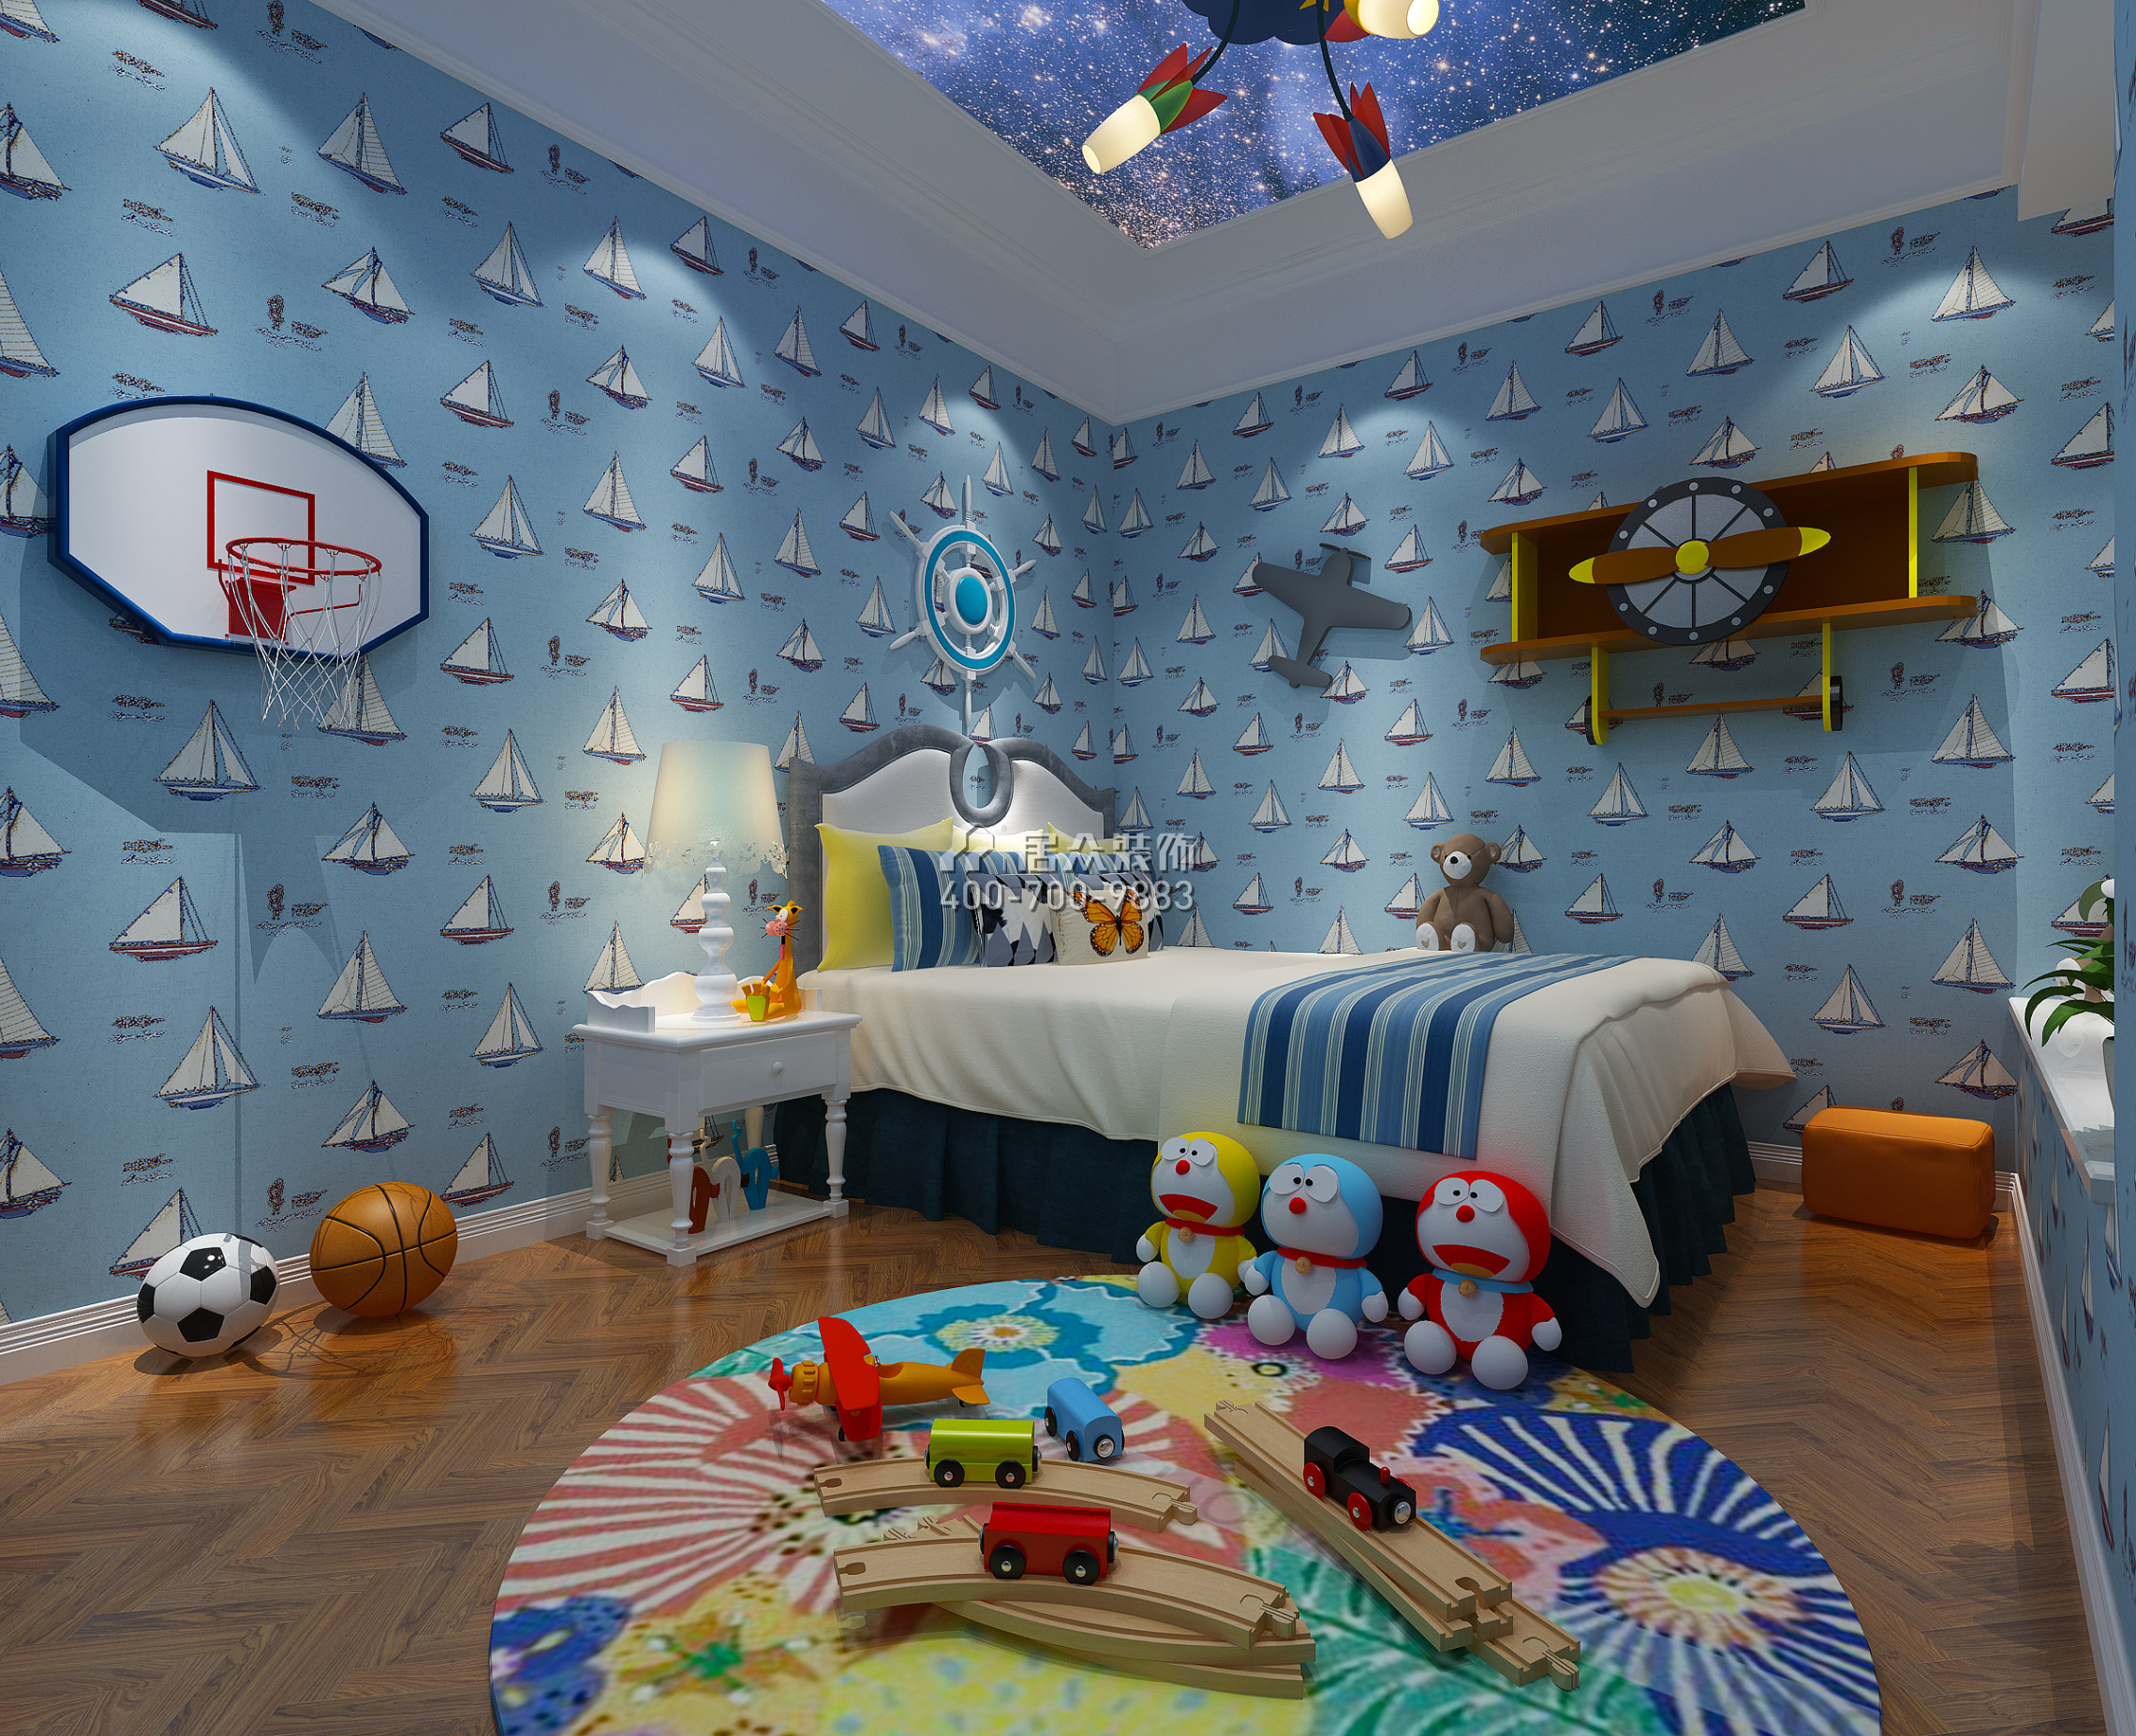 雅居乐剑桥郡247平方米北欧风格平层户型儿童房装修效果图